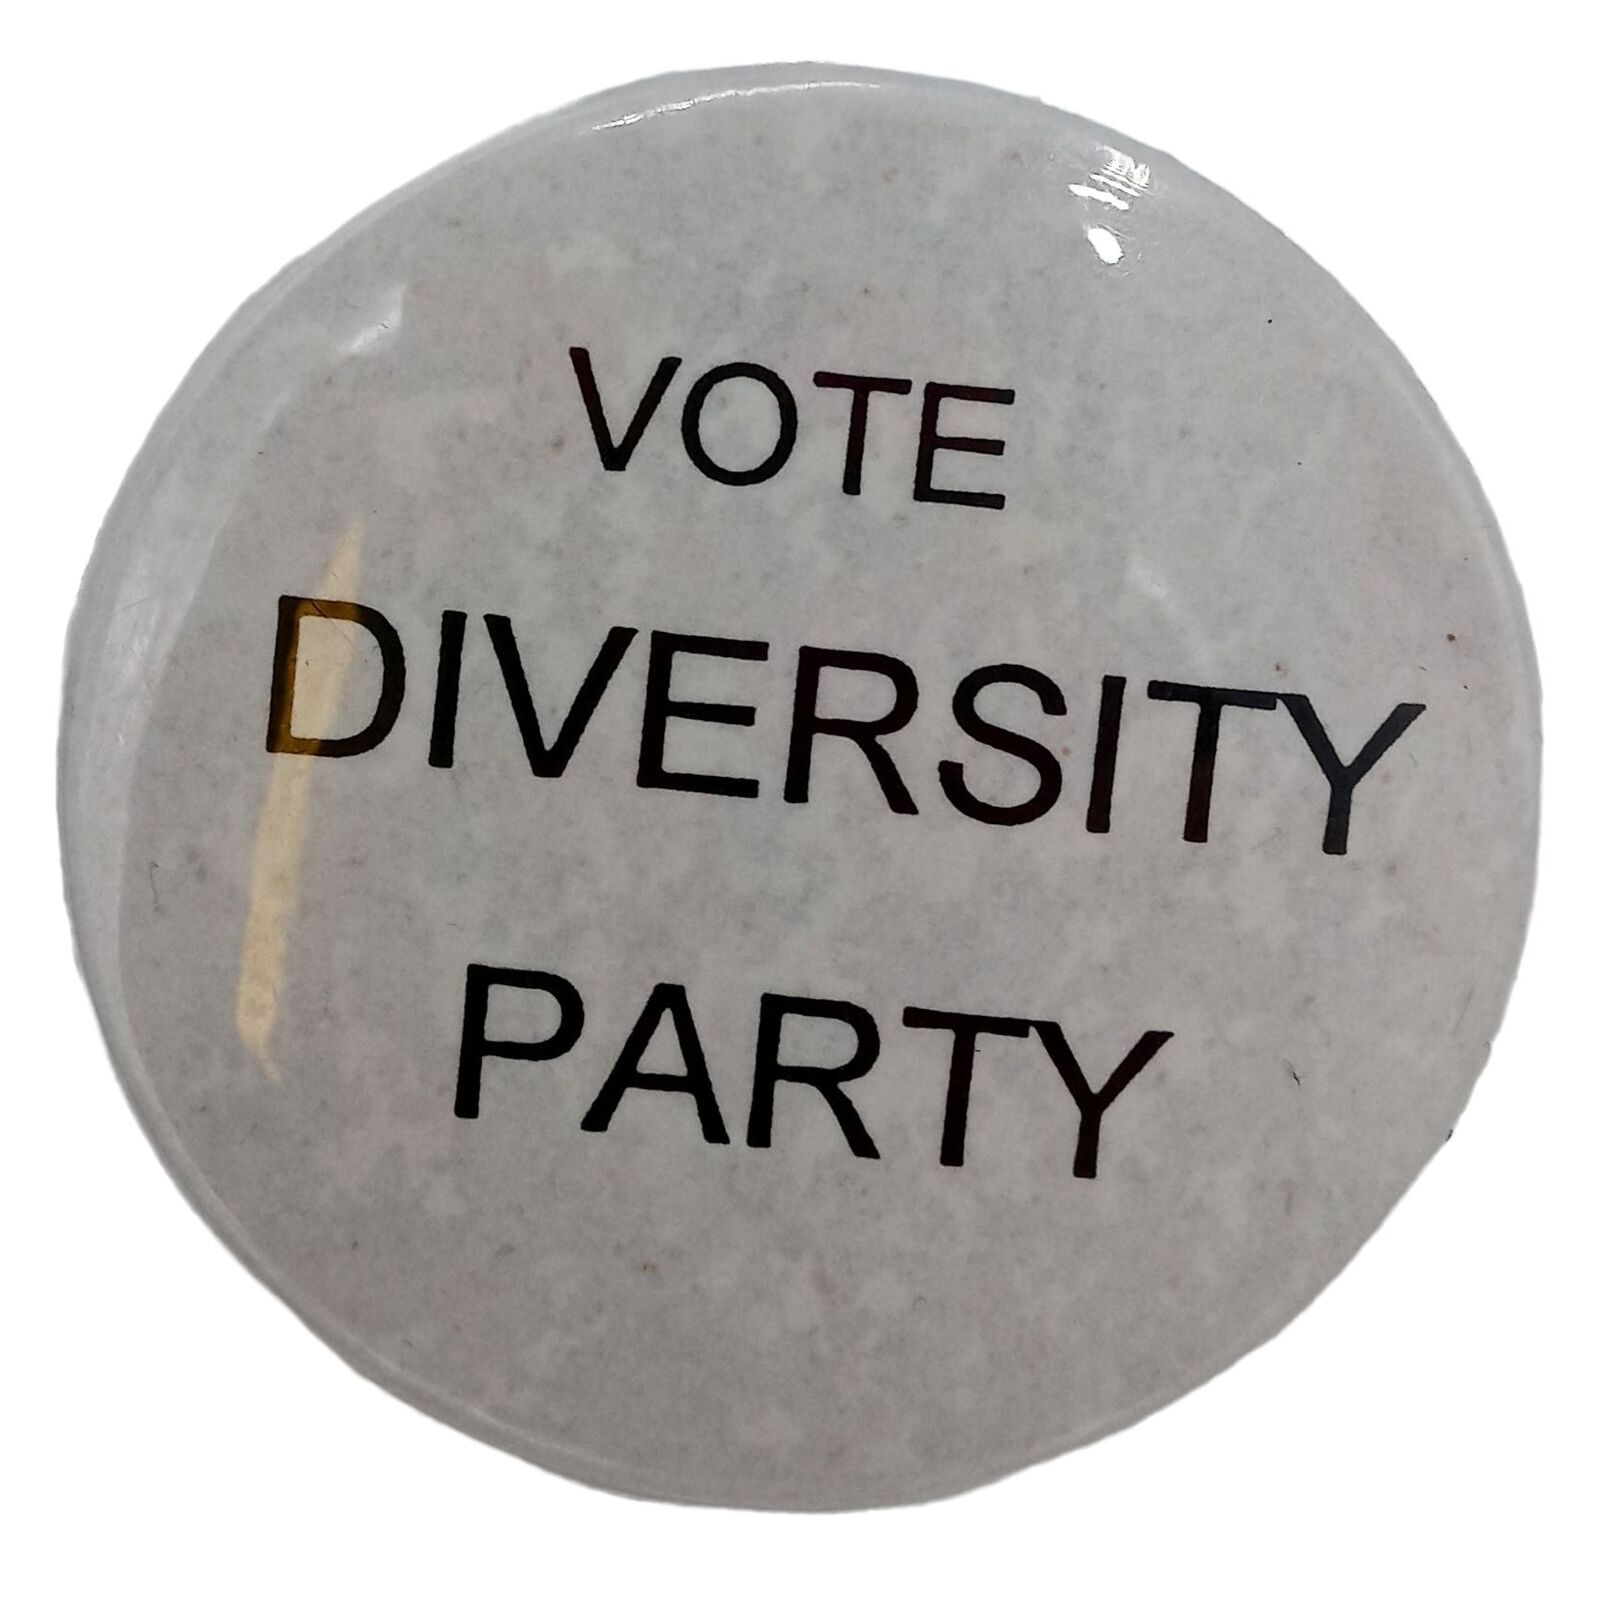 Vote Diversity Party Pinback Button Vintage Political Campaign